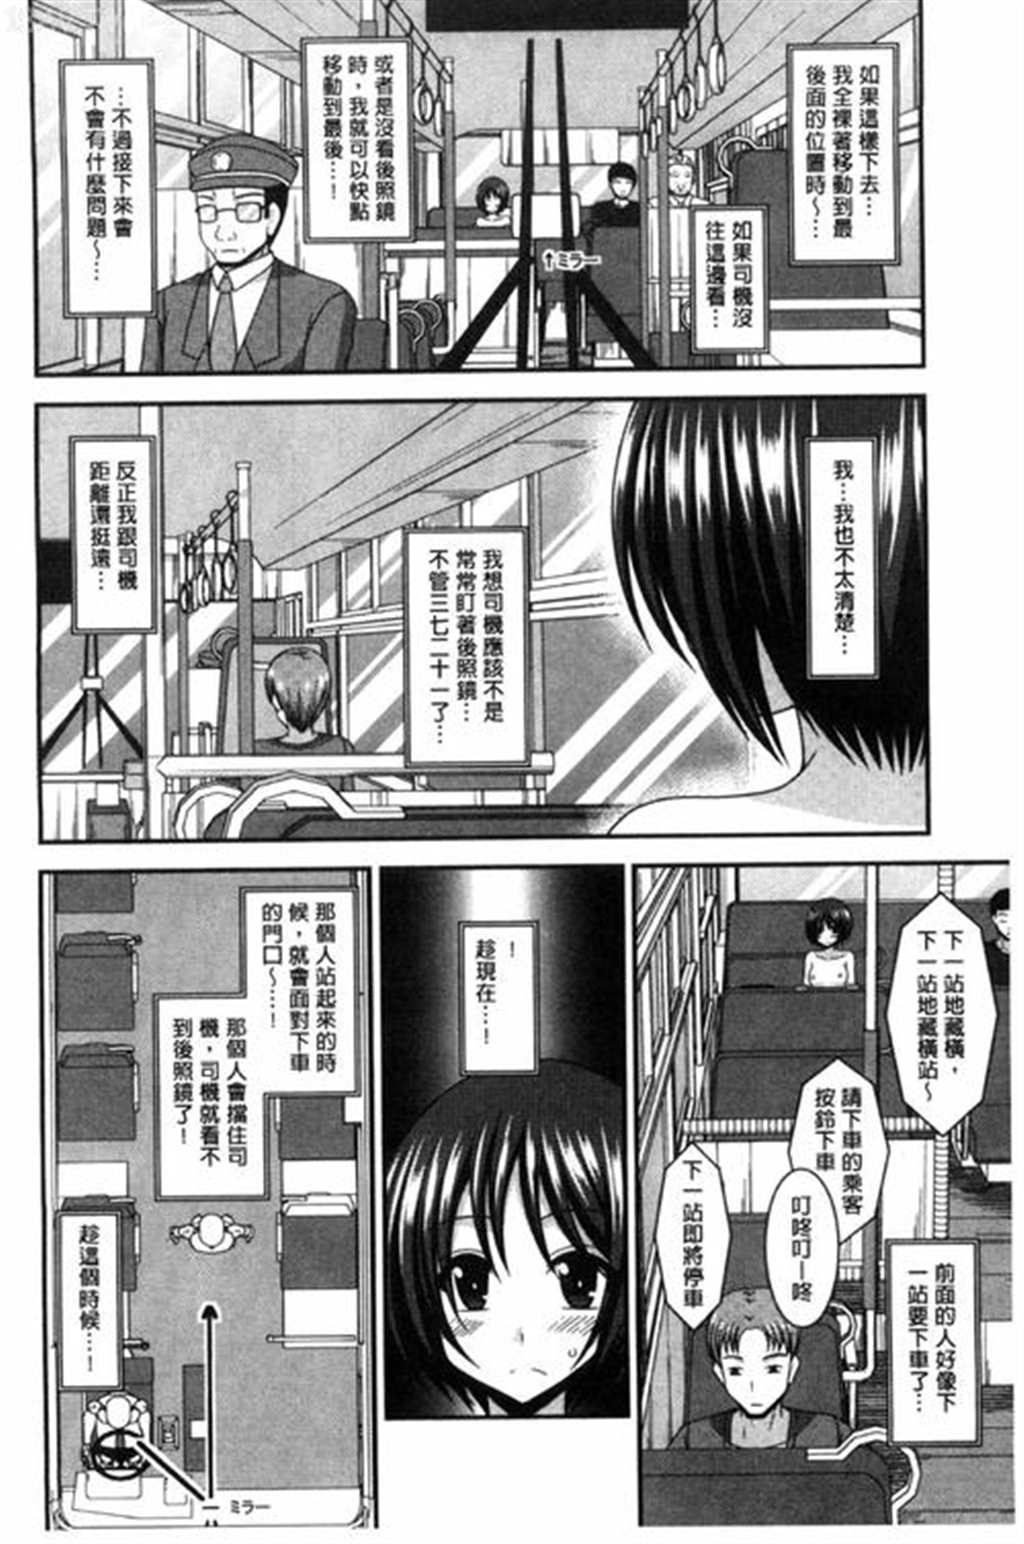 绅士库全彩漫画刀剑神域【肉番本子】(2)_里番漫画 - 无趣图